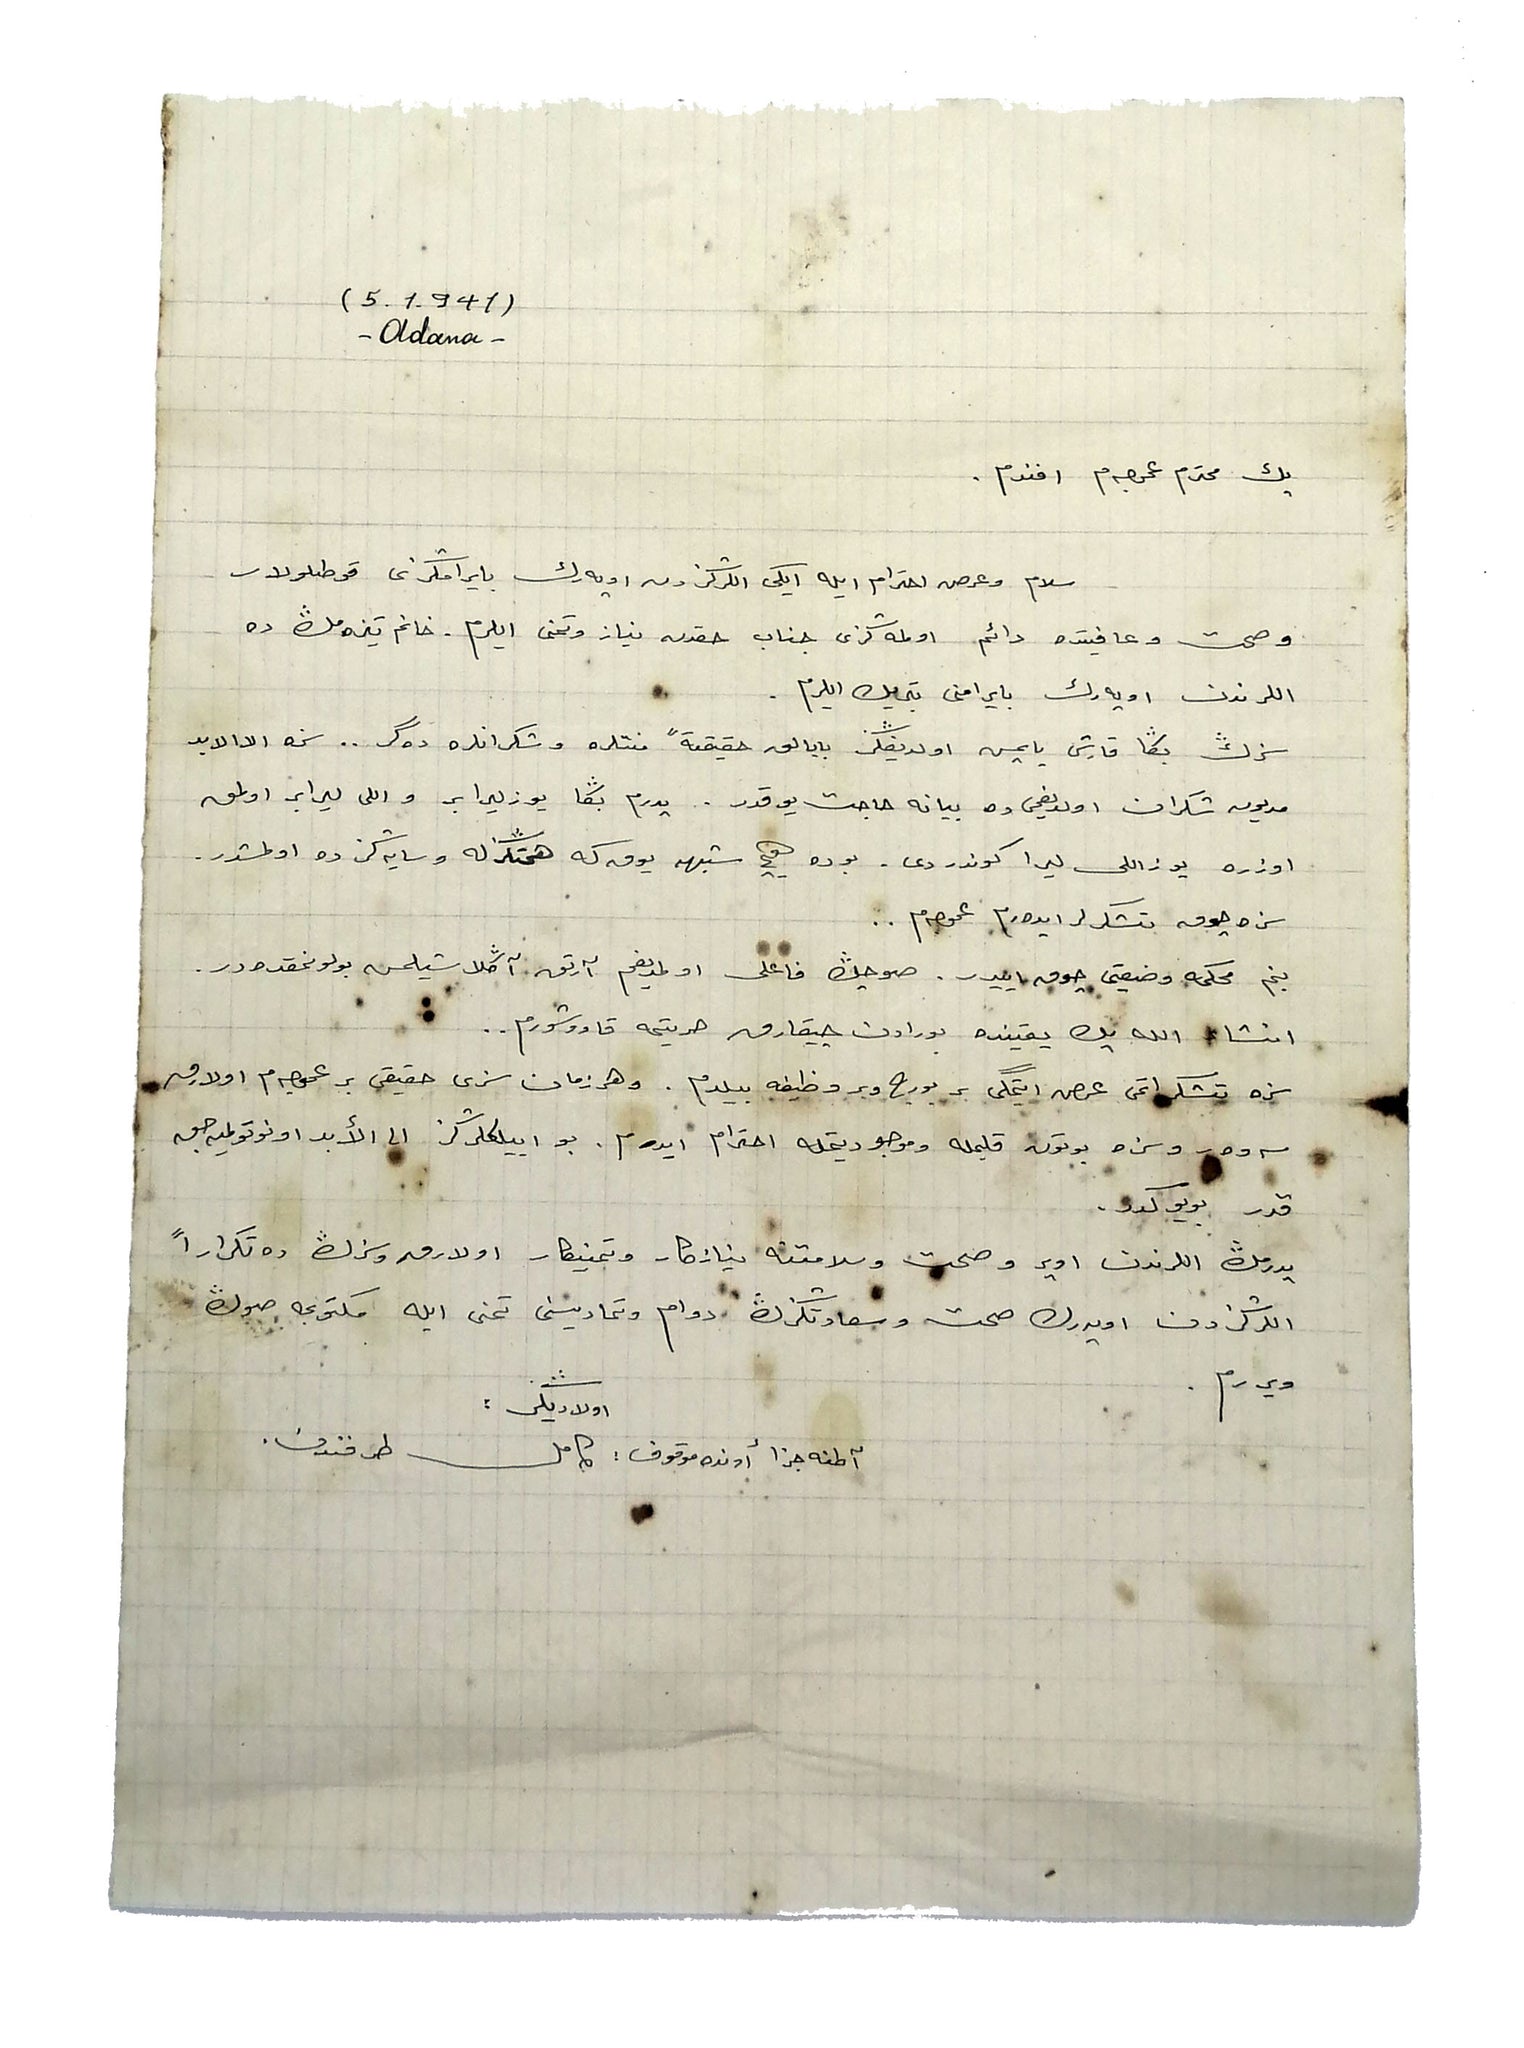 [CEZAEVİ MEKTUPLARI - ADANA CEZAEVİ] Osmanlıca, el yazısı, Adana Cezaevi’nde tutuklu Kâmil tarafından amcasına hitaben teşekkürü içeren 5.1.1941 tarihli mektup